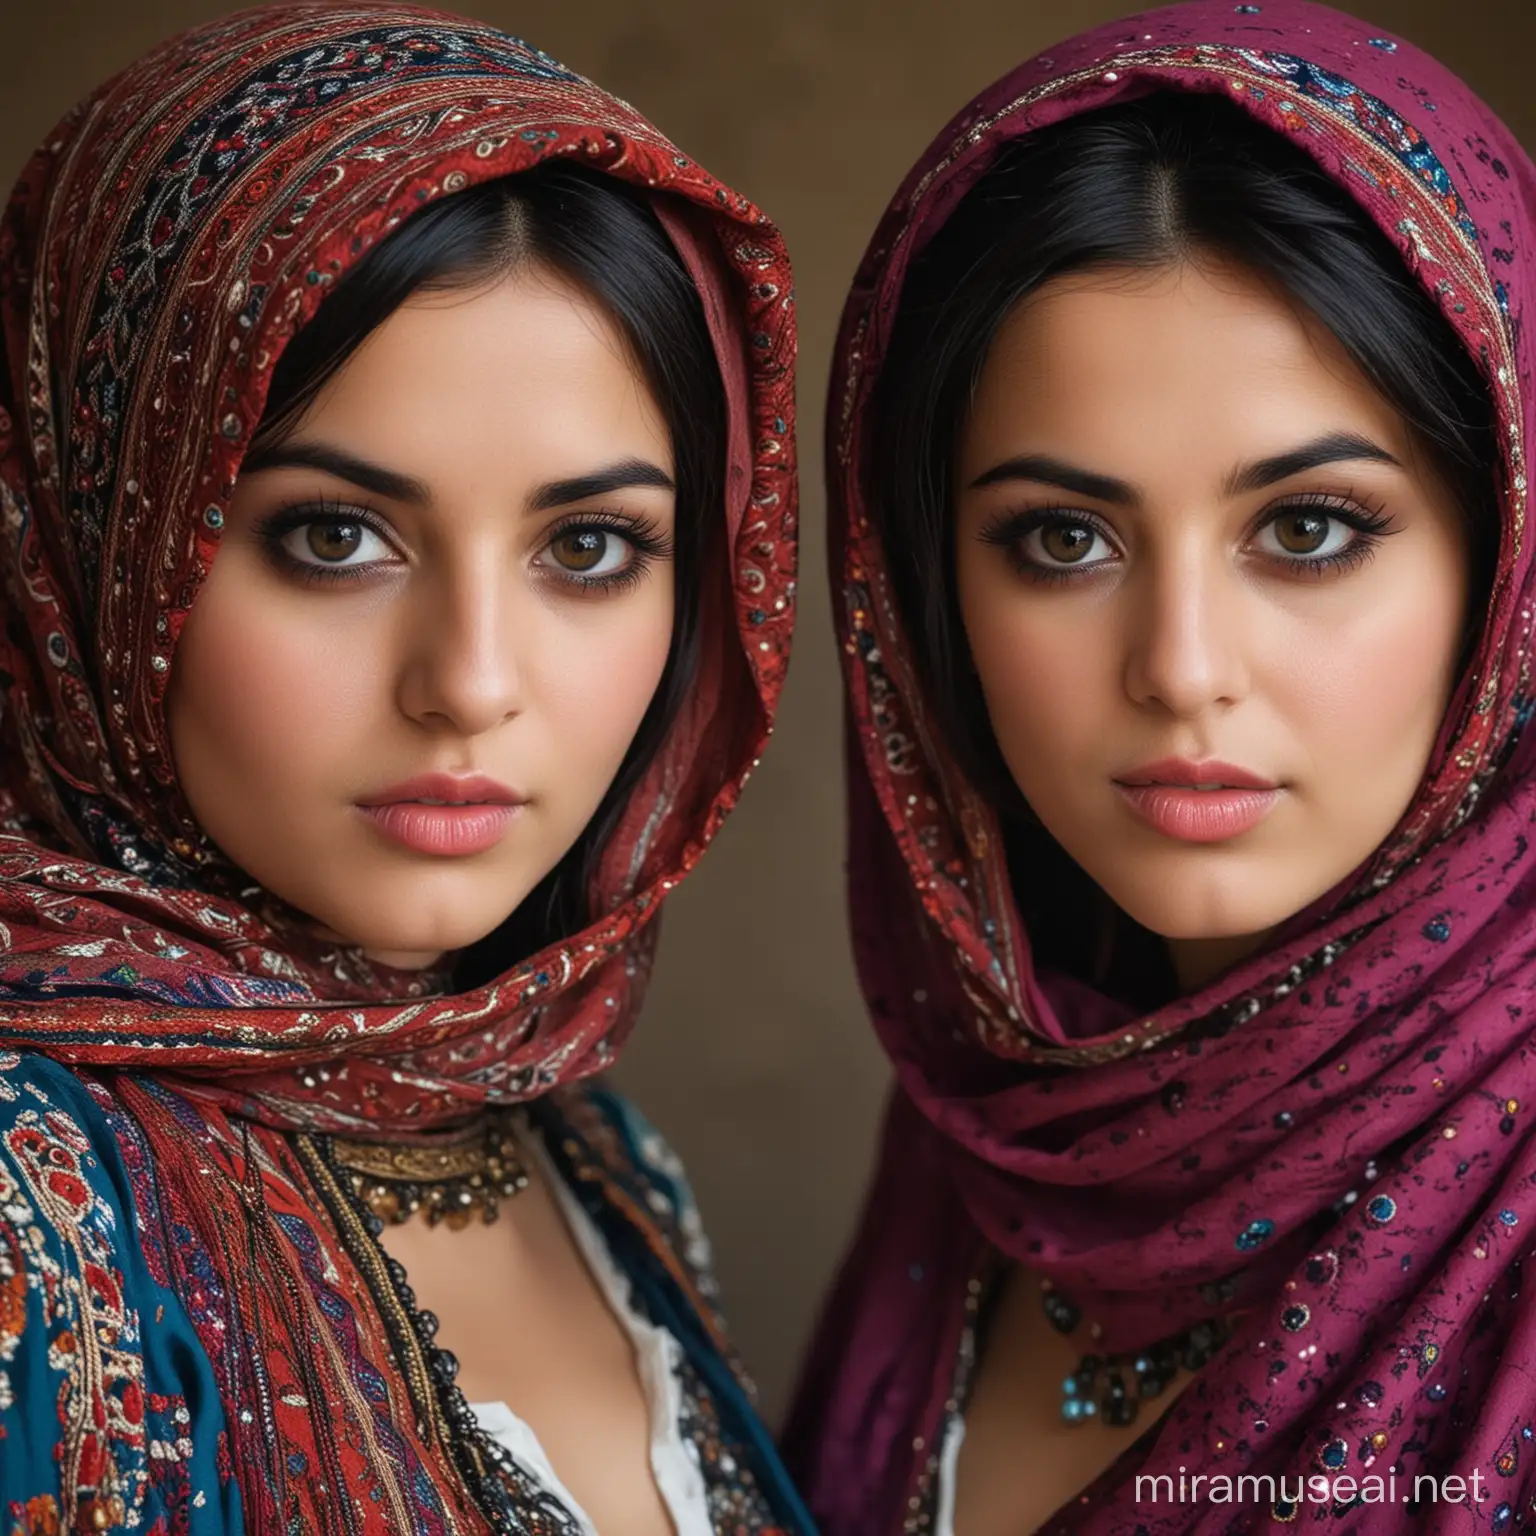 اگر تصویر دو دختر زیبای حجابی افغانستانی که لباس محلی دارند و چشم های بزرگ و سیاه و لب های سکسی و سینه های بزرگ را به تصویر بکشی چگونه خواهد بود